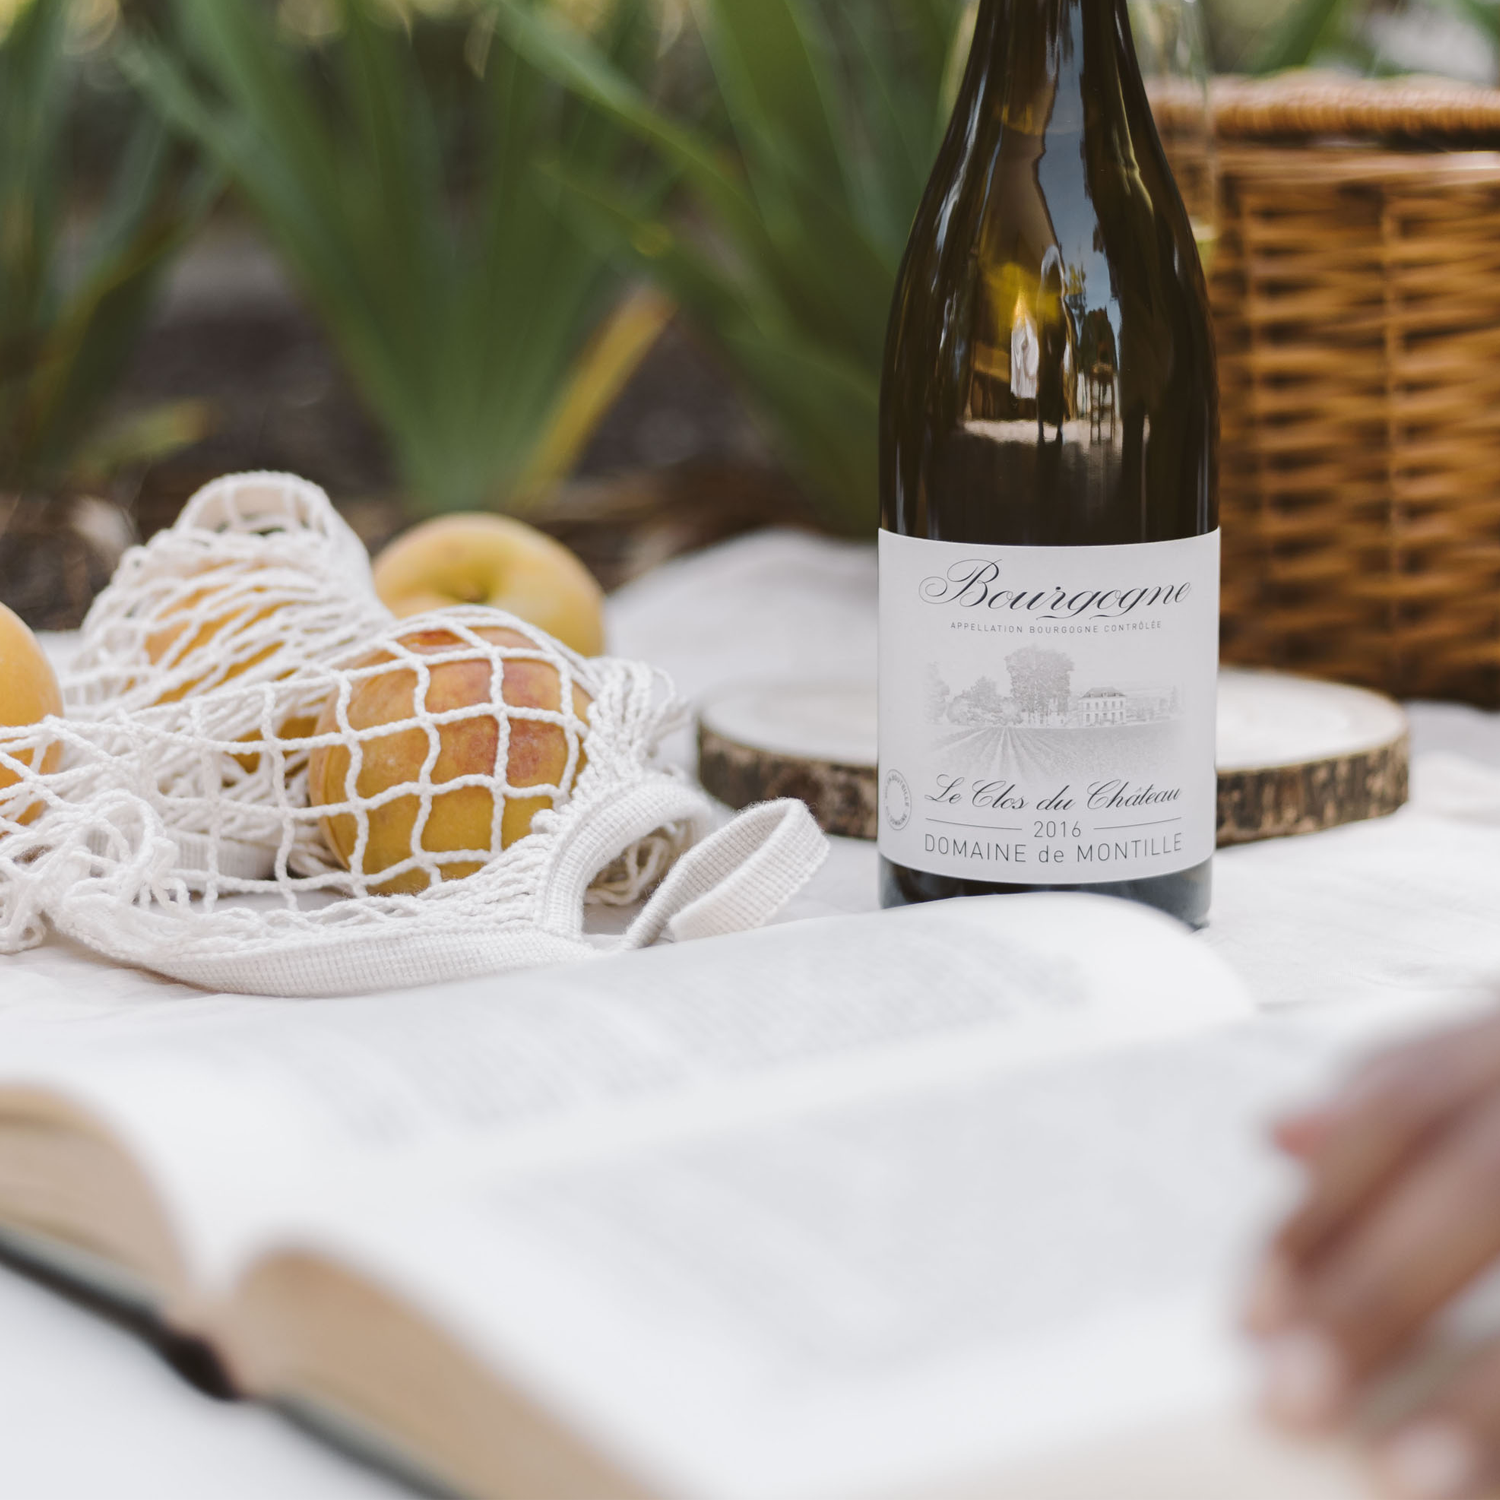 Leer más: La Chardonnay de Domaine de Montille